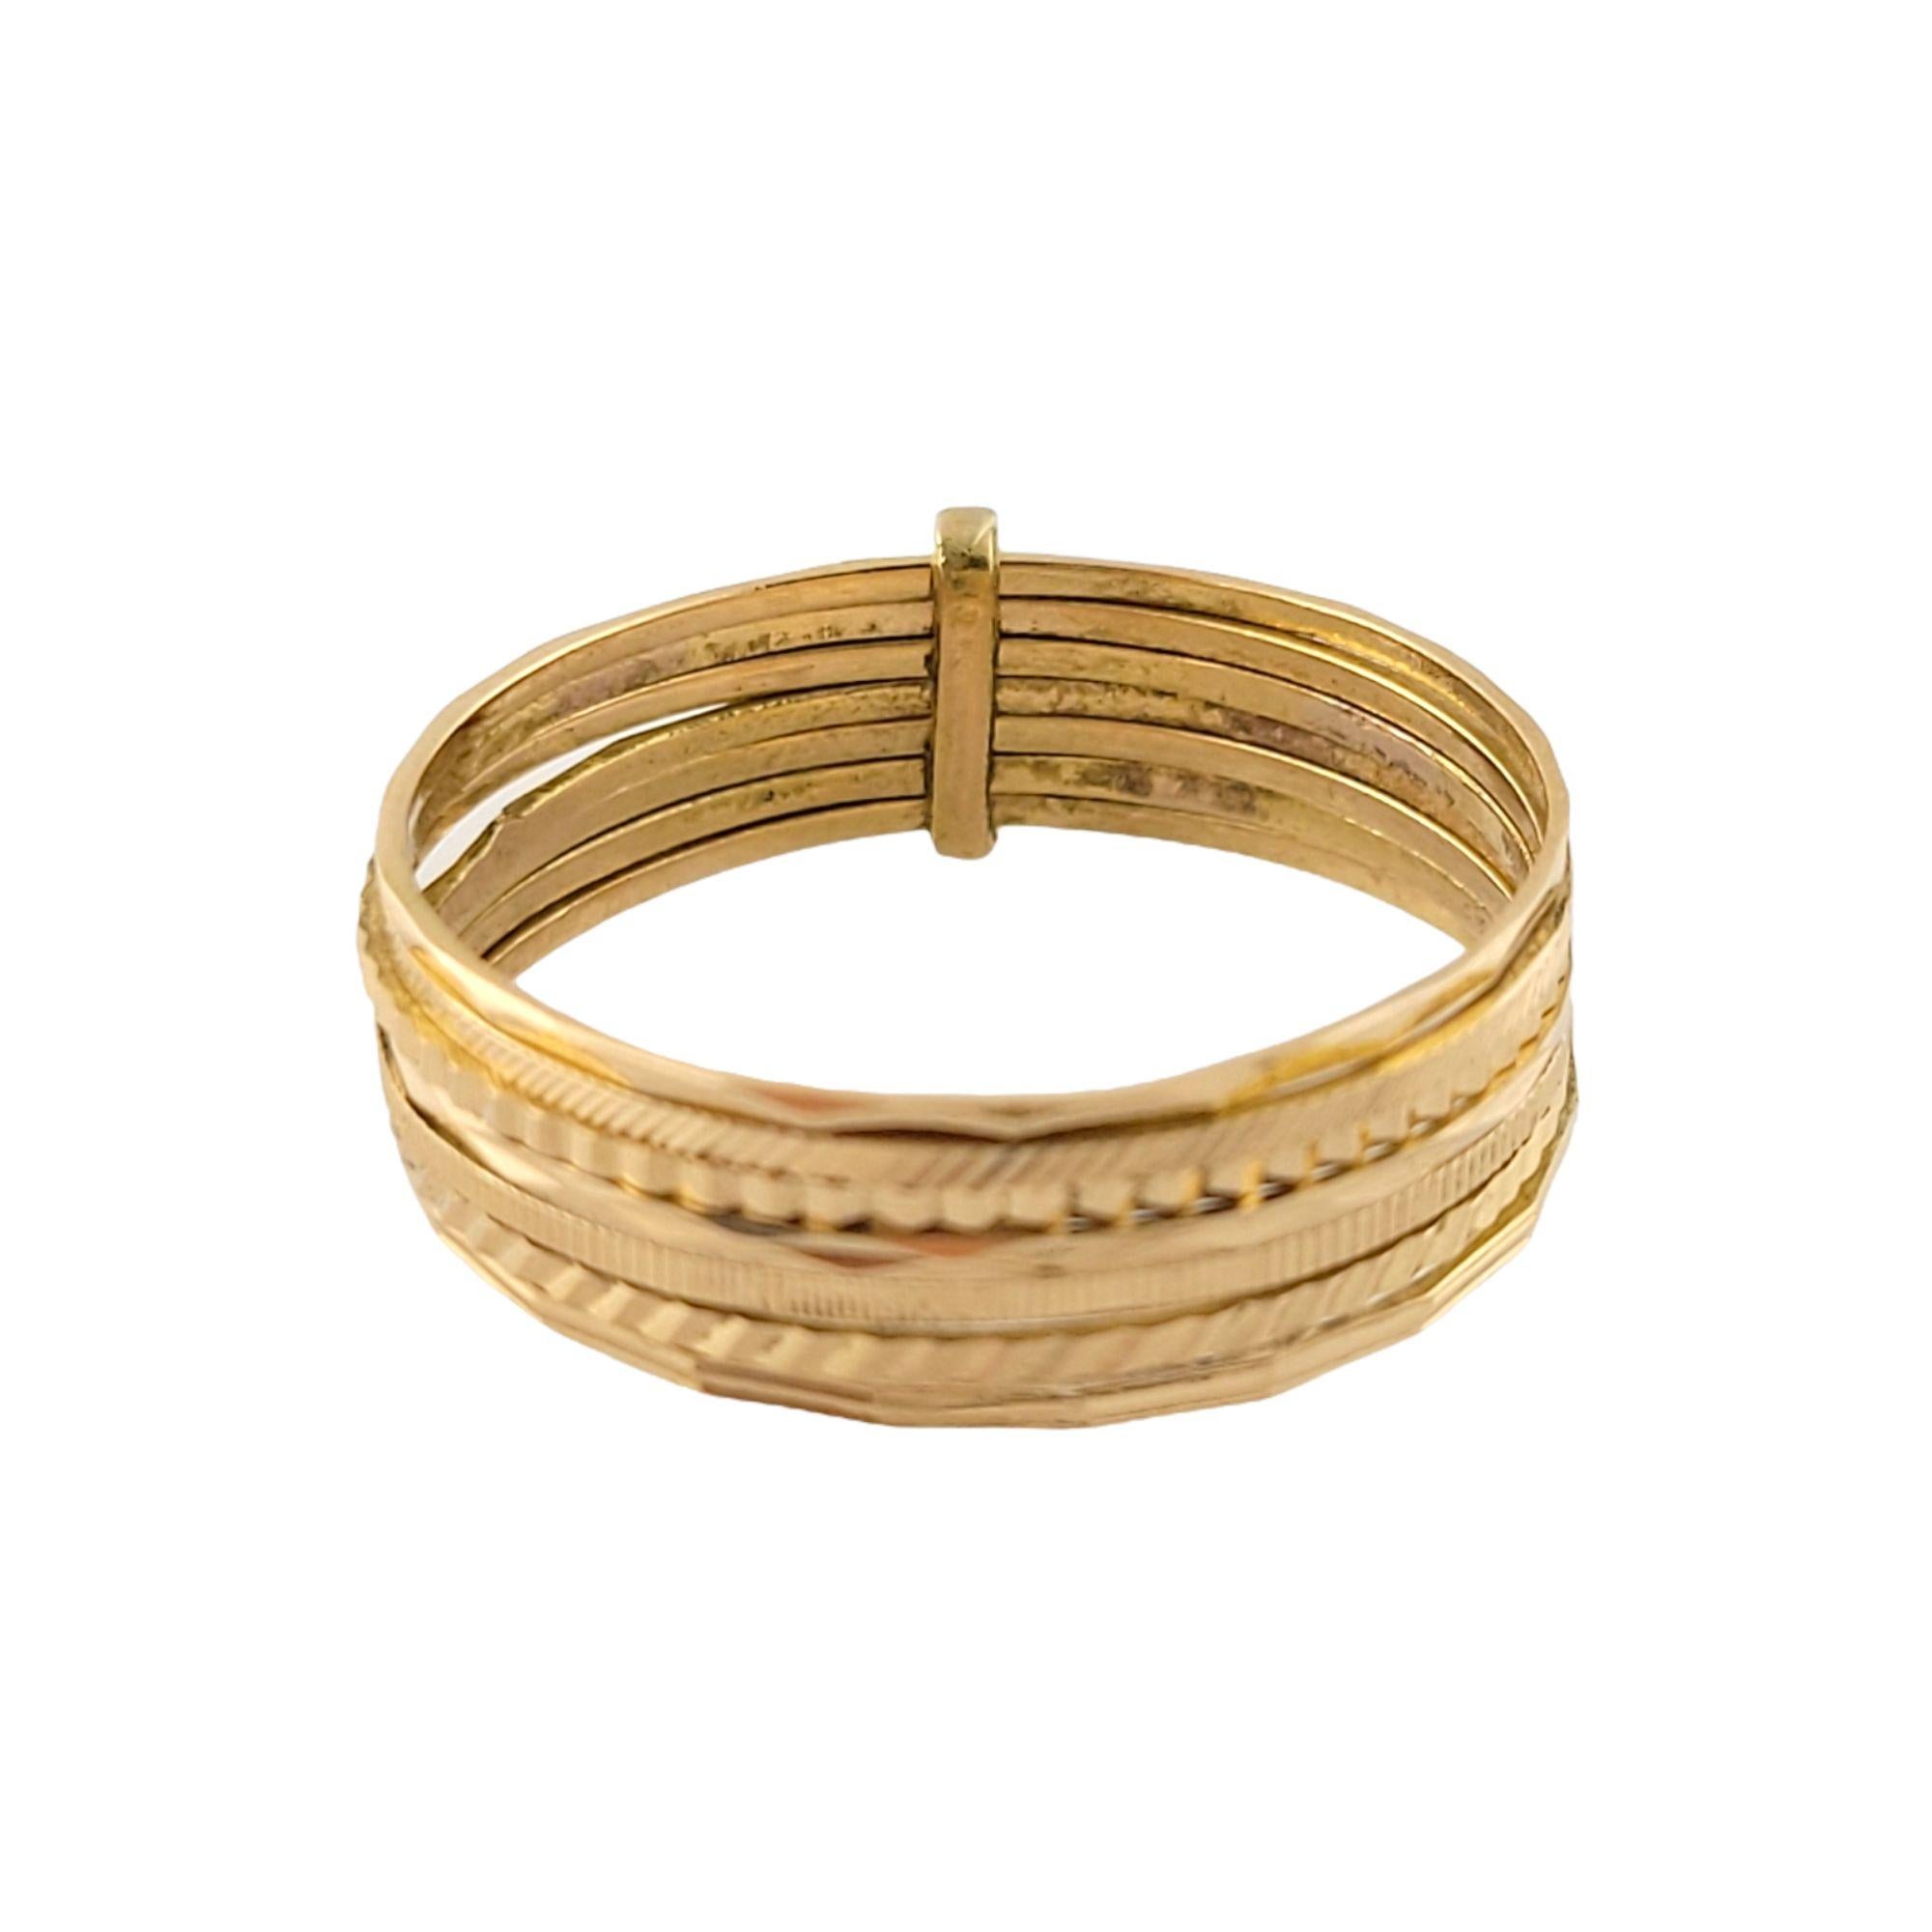 Vintage 18K Gelbgold mehrere Textur Ringe

Schöner Ring aus 18 Karat Gelbgold mit mehreren dünnen, strukturierten Ringen, die durch ein goldenes Glied zusammengehalten werden.

Schaft: 11mm

Gewicht: 3,5 gr / 2,2 dwt

Größe: 11,5

Geprüft 18K

Sehr